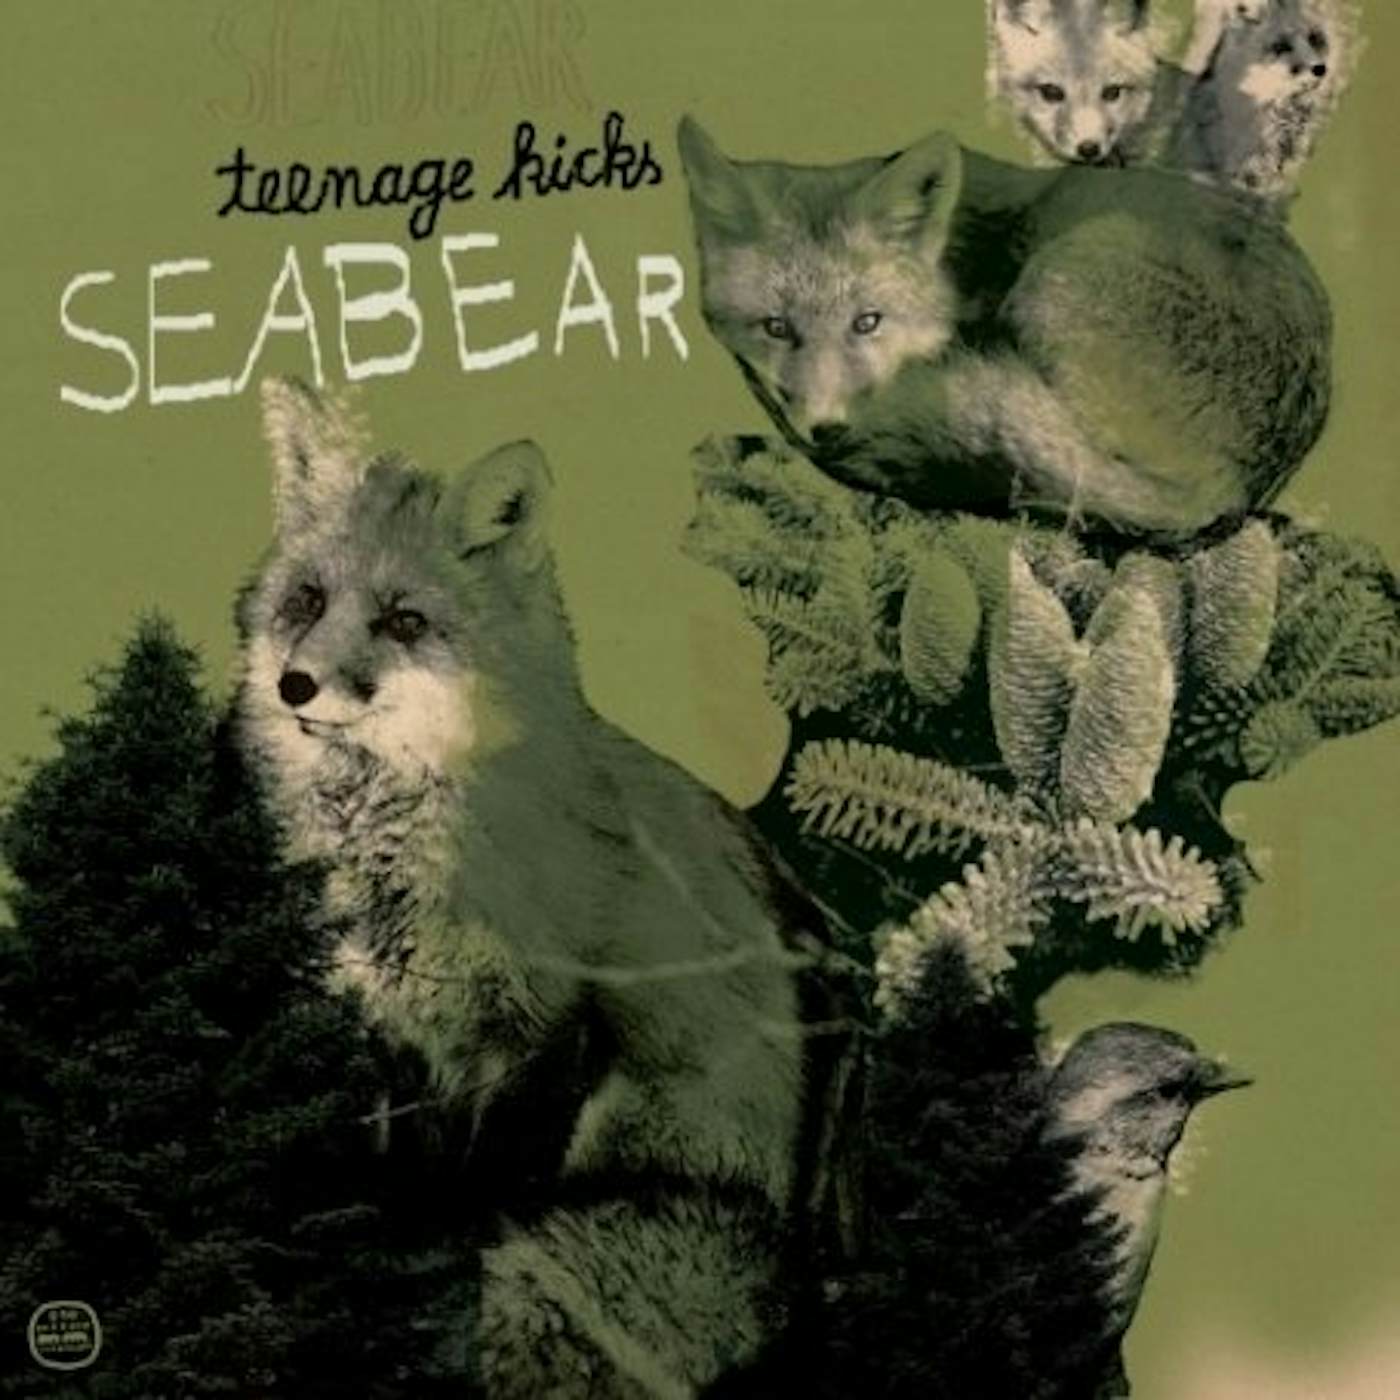 Seabear Teenage Kicks Vinyl Record